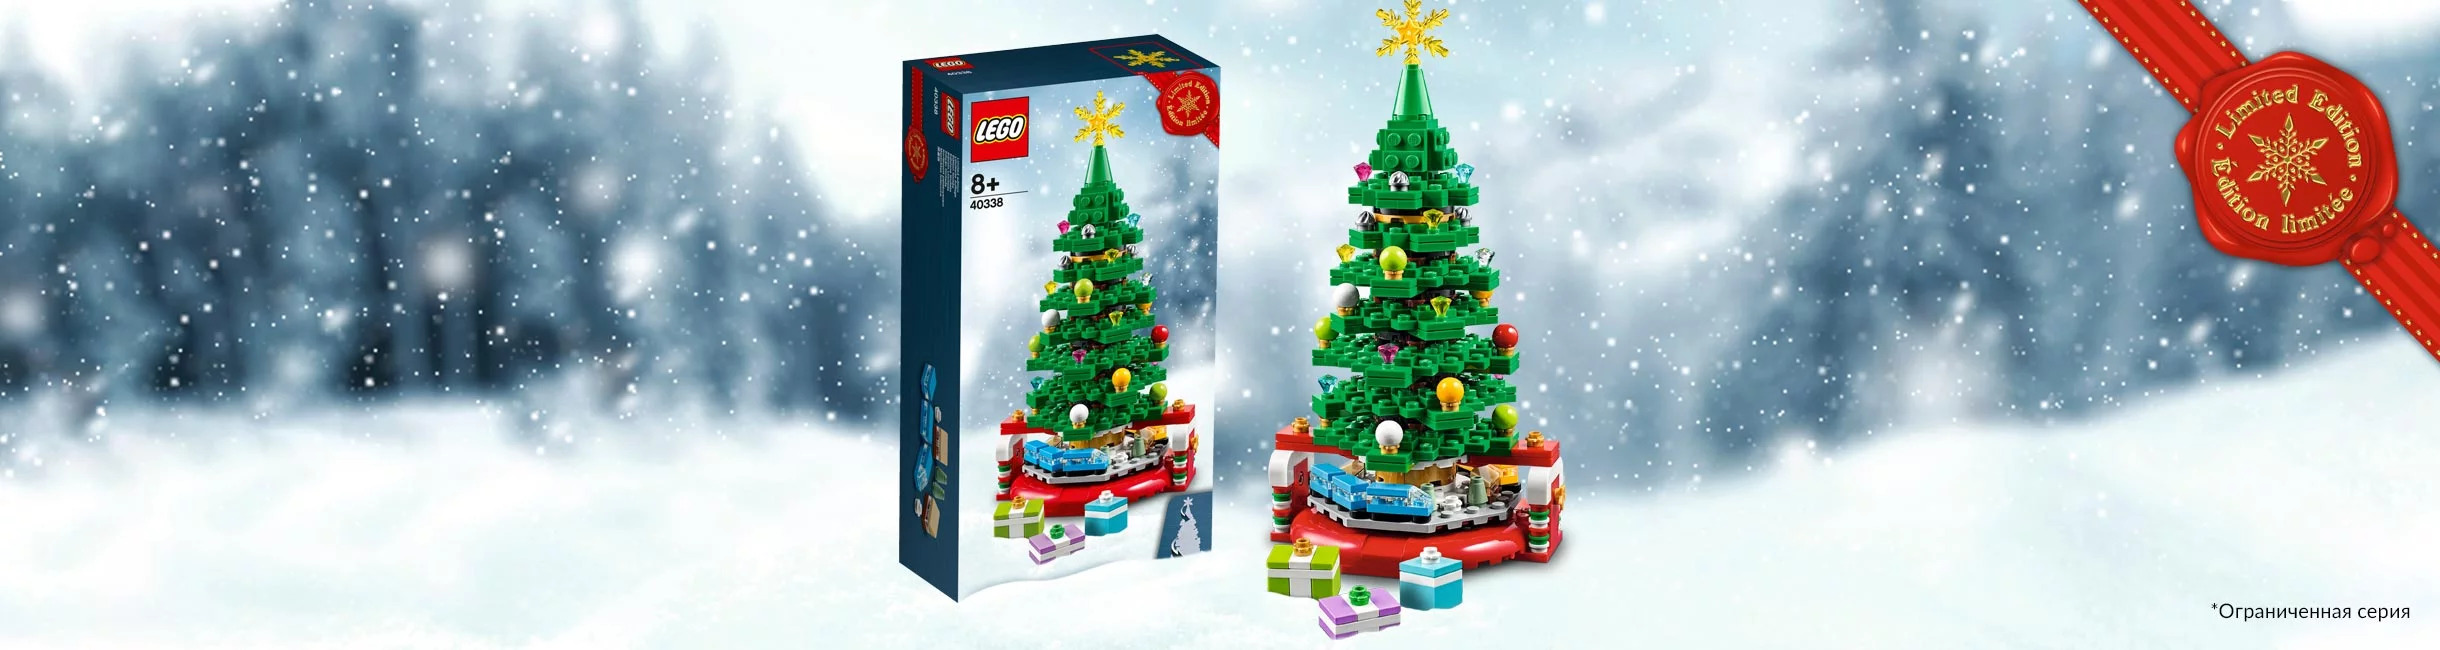 Рекламная акция Лего (LEGO) «В 2020 с коллекционной Ёлкой от LEGO!»